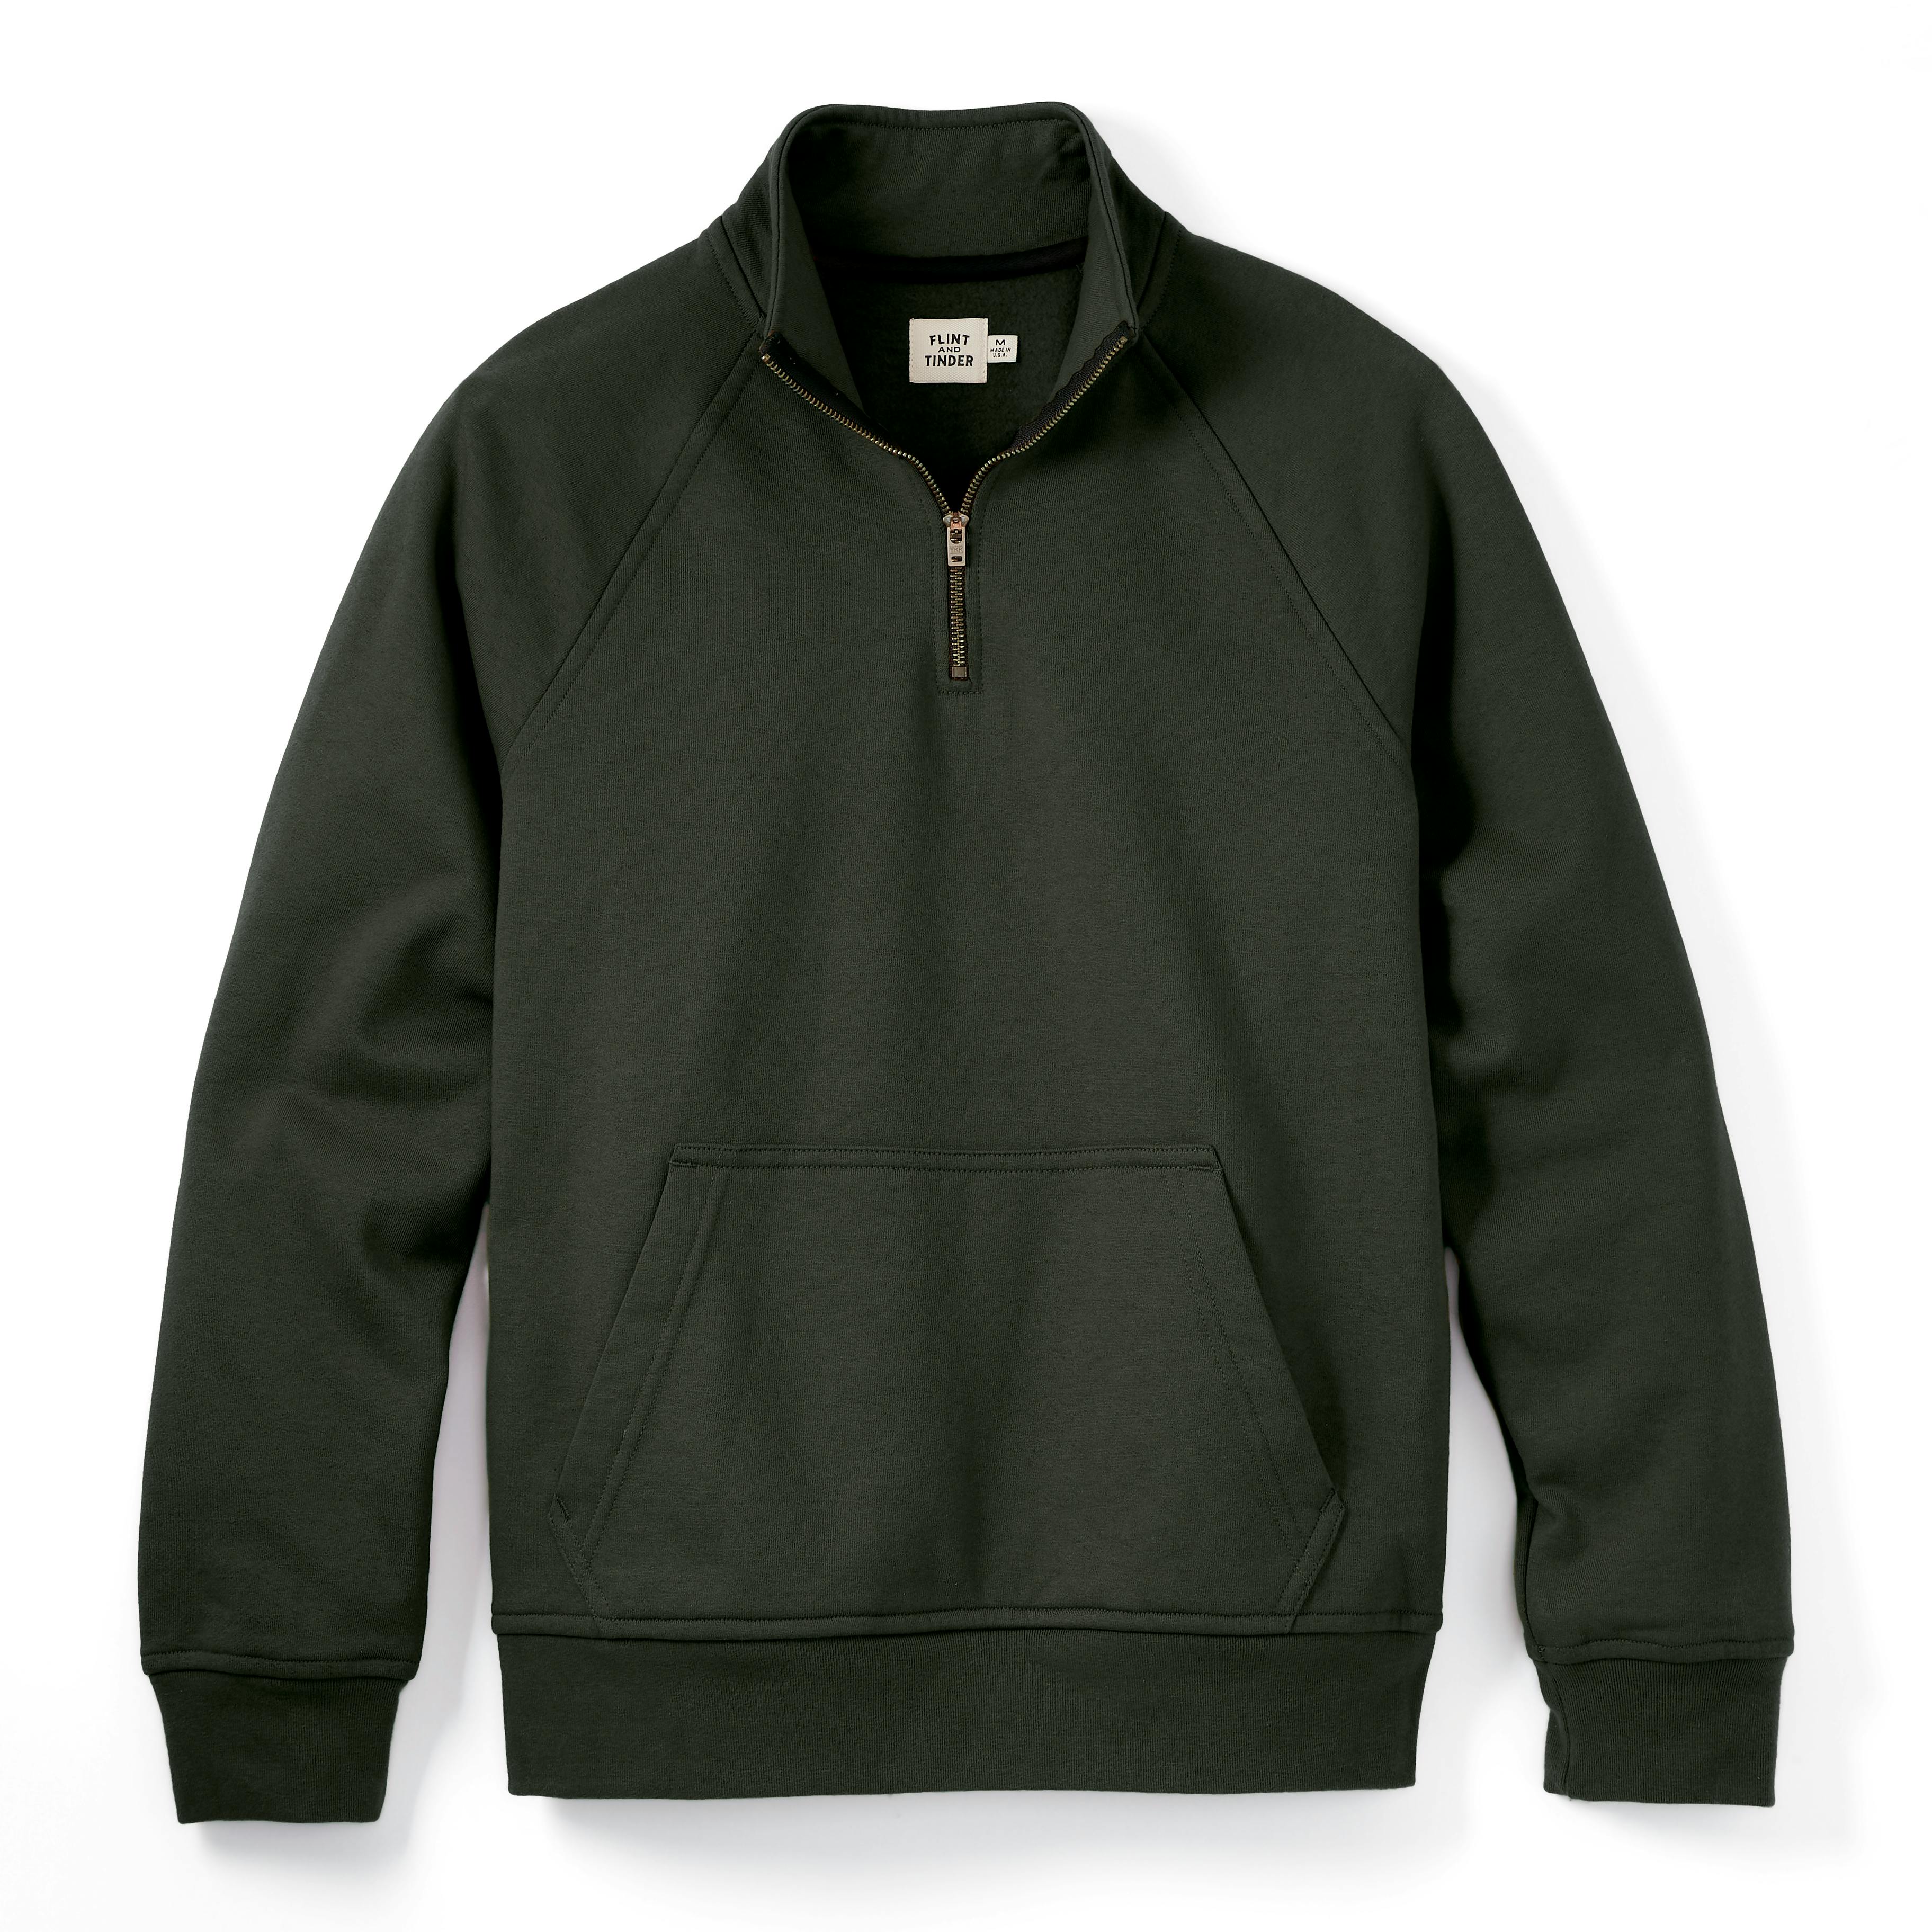 10-Year Quarter Zip Sweatshirt